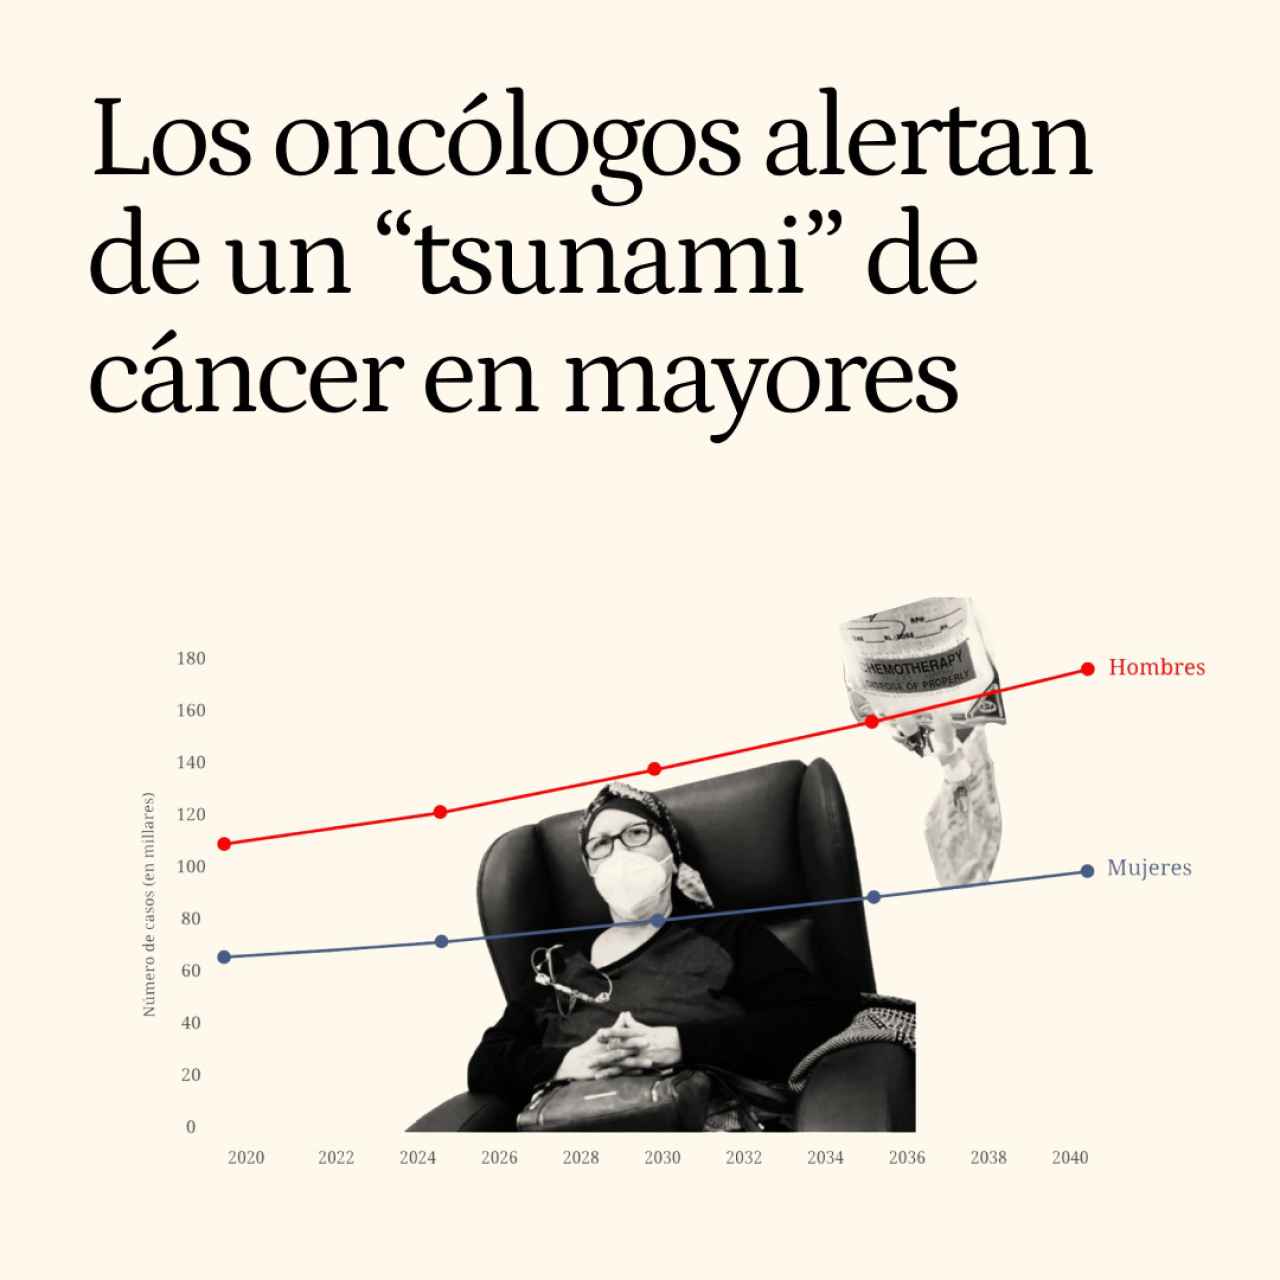 Los oncólogos alertan de un "tsunami" de cáncer en mayores: España tendrá un 55% más de casos en 2040